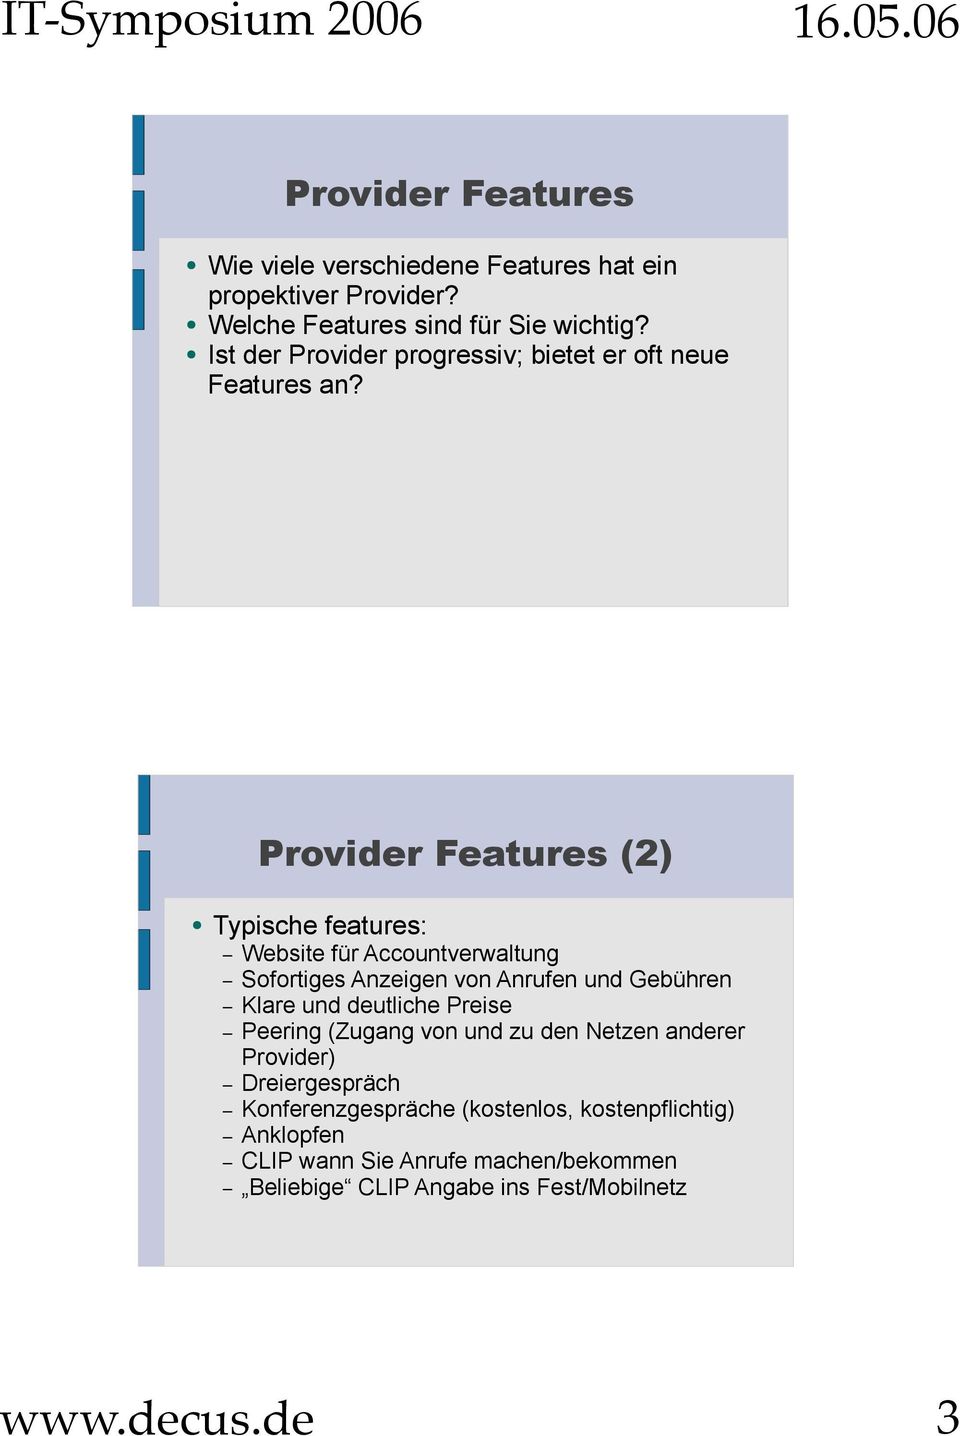 Provider Features (2) Typische features: Website für Accountverwaltung Sofortiges Anzeigen von Anrufen und Gebühren Klare und